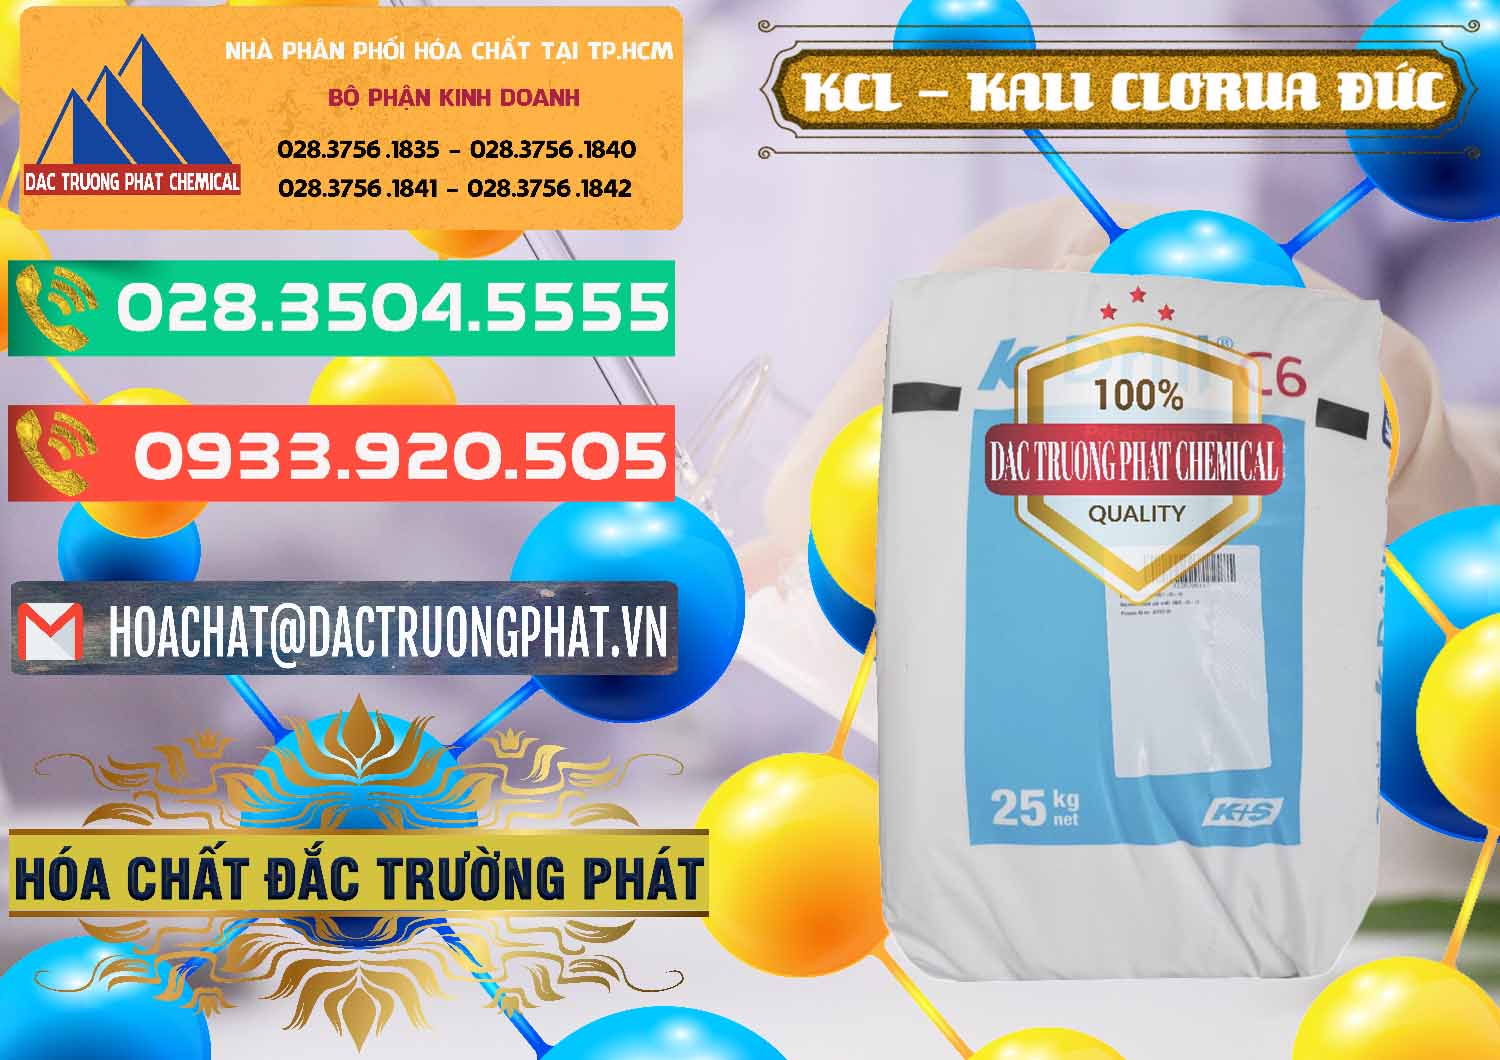 Chuyên phân phối & bán KCL – Kali Clorua Trắng K DRILL Đức Germany - 0428 - Công ty cung cấp - kinh doanh hóa chất tại TP.HCM - congtyhoachat.com.vn